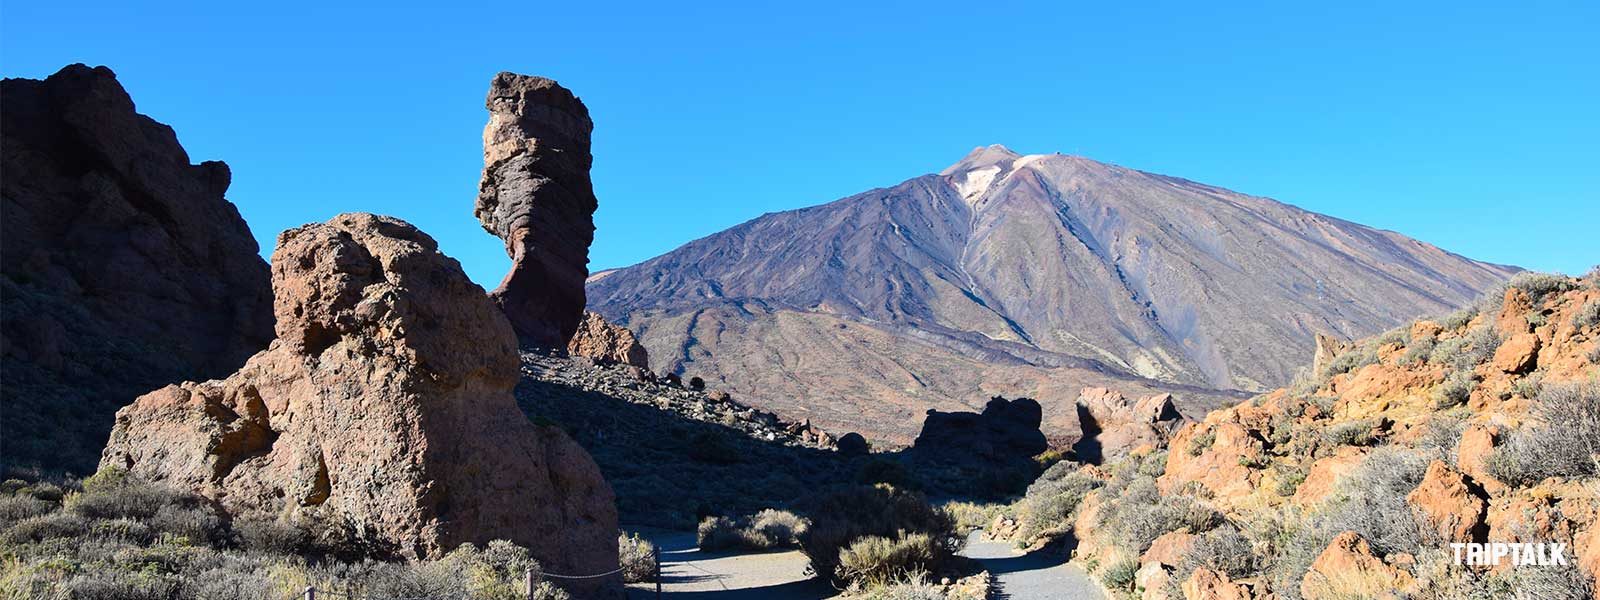 De Pico del Teide torent hoog boven het landschap uit